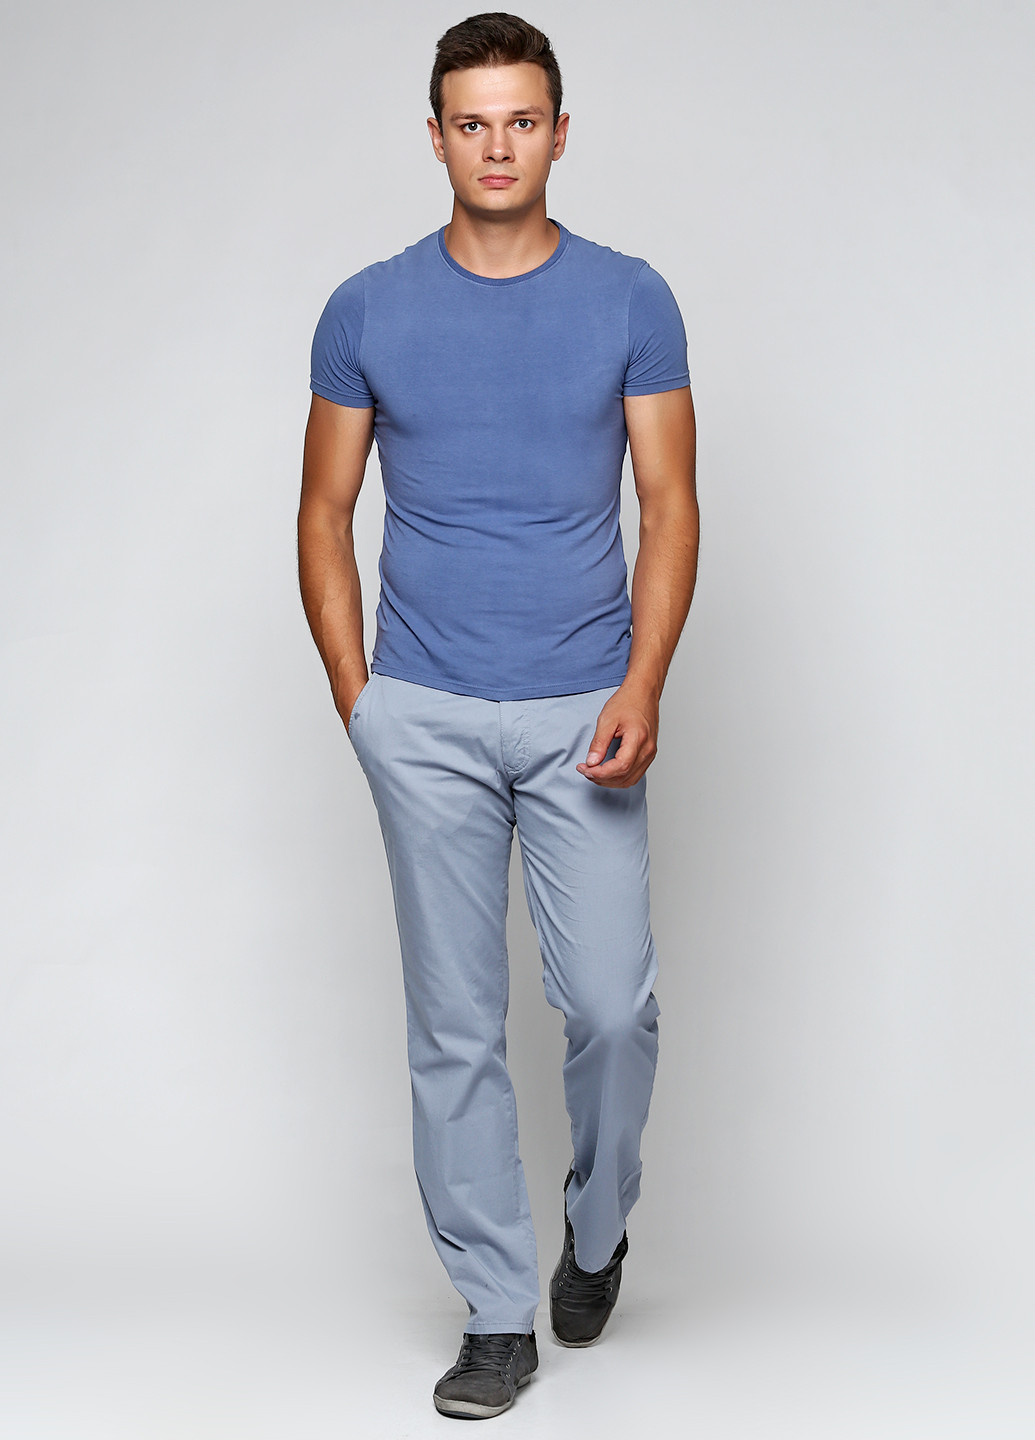 Голубые кэжуал демисезонные со средней талией брюки Pioneer